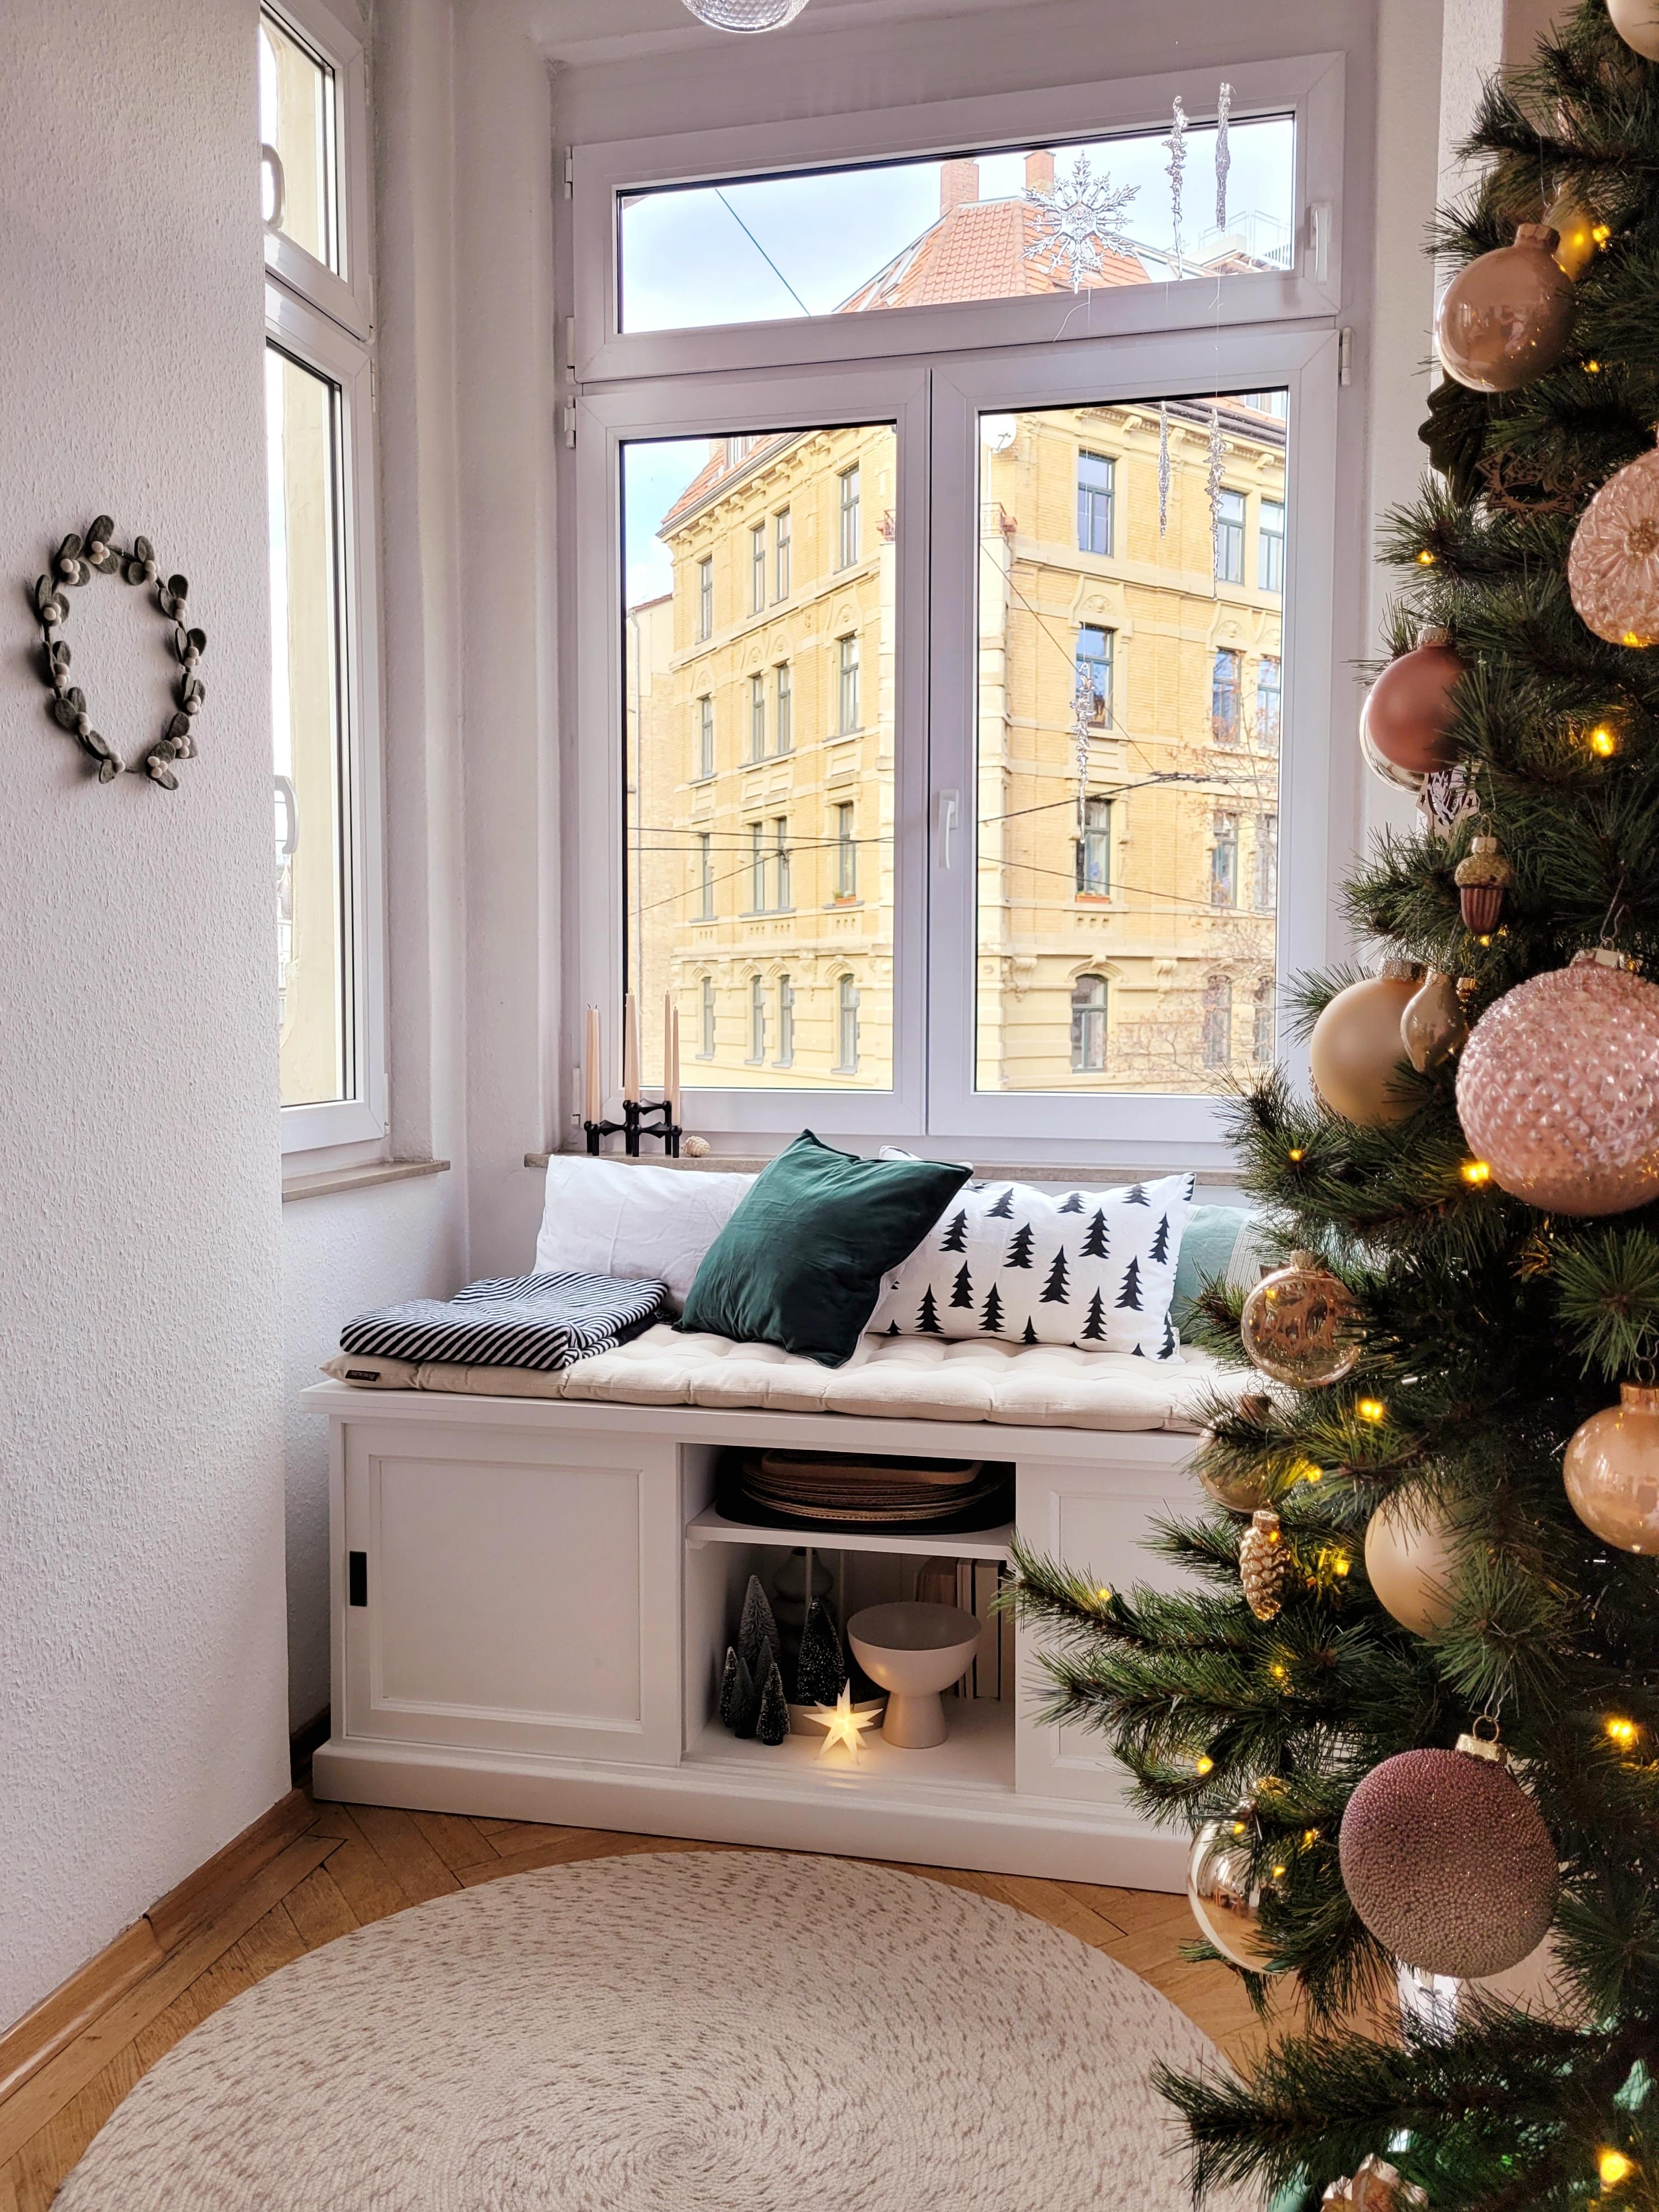 Ein entspannten Advent wünsche ich euch allen da draußen!
#Weihnachten #weihnachtsbaum #Altbau #Erker #Wohnzimmer #gemütlich 
